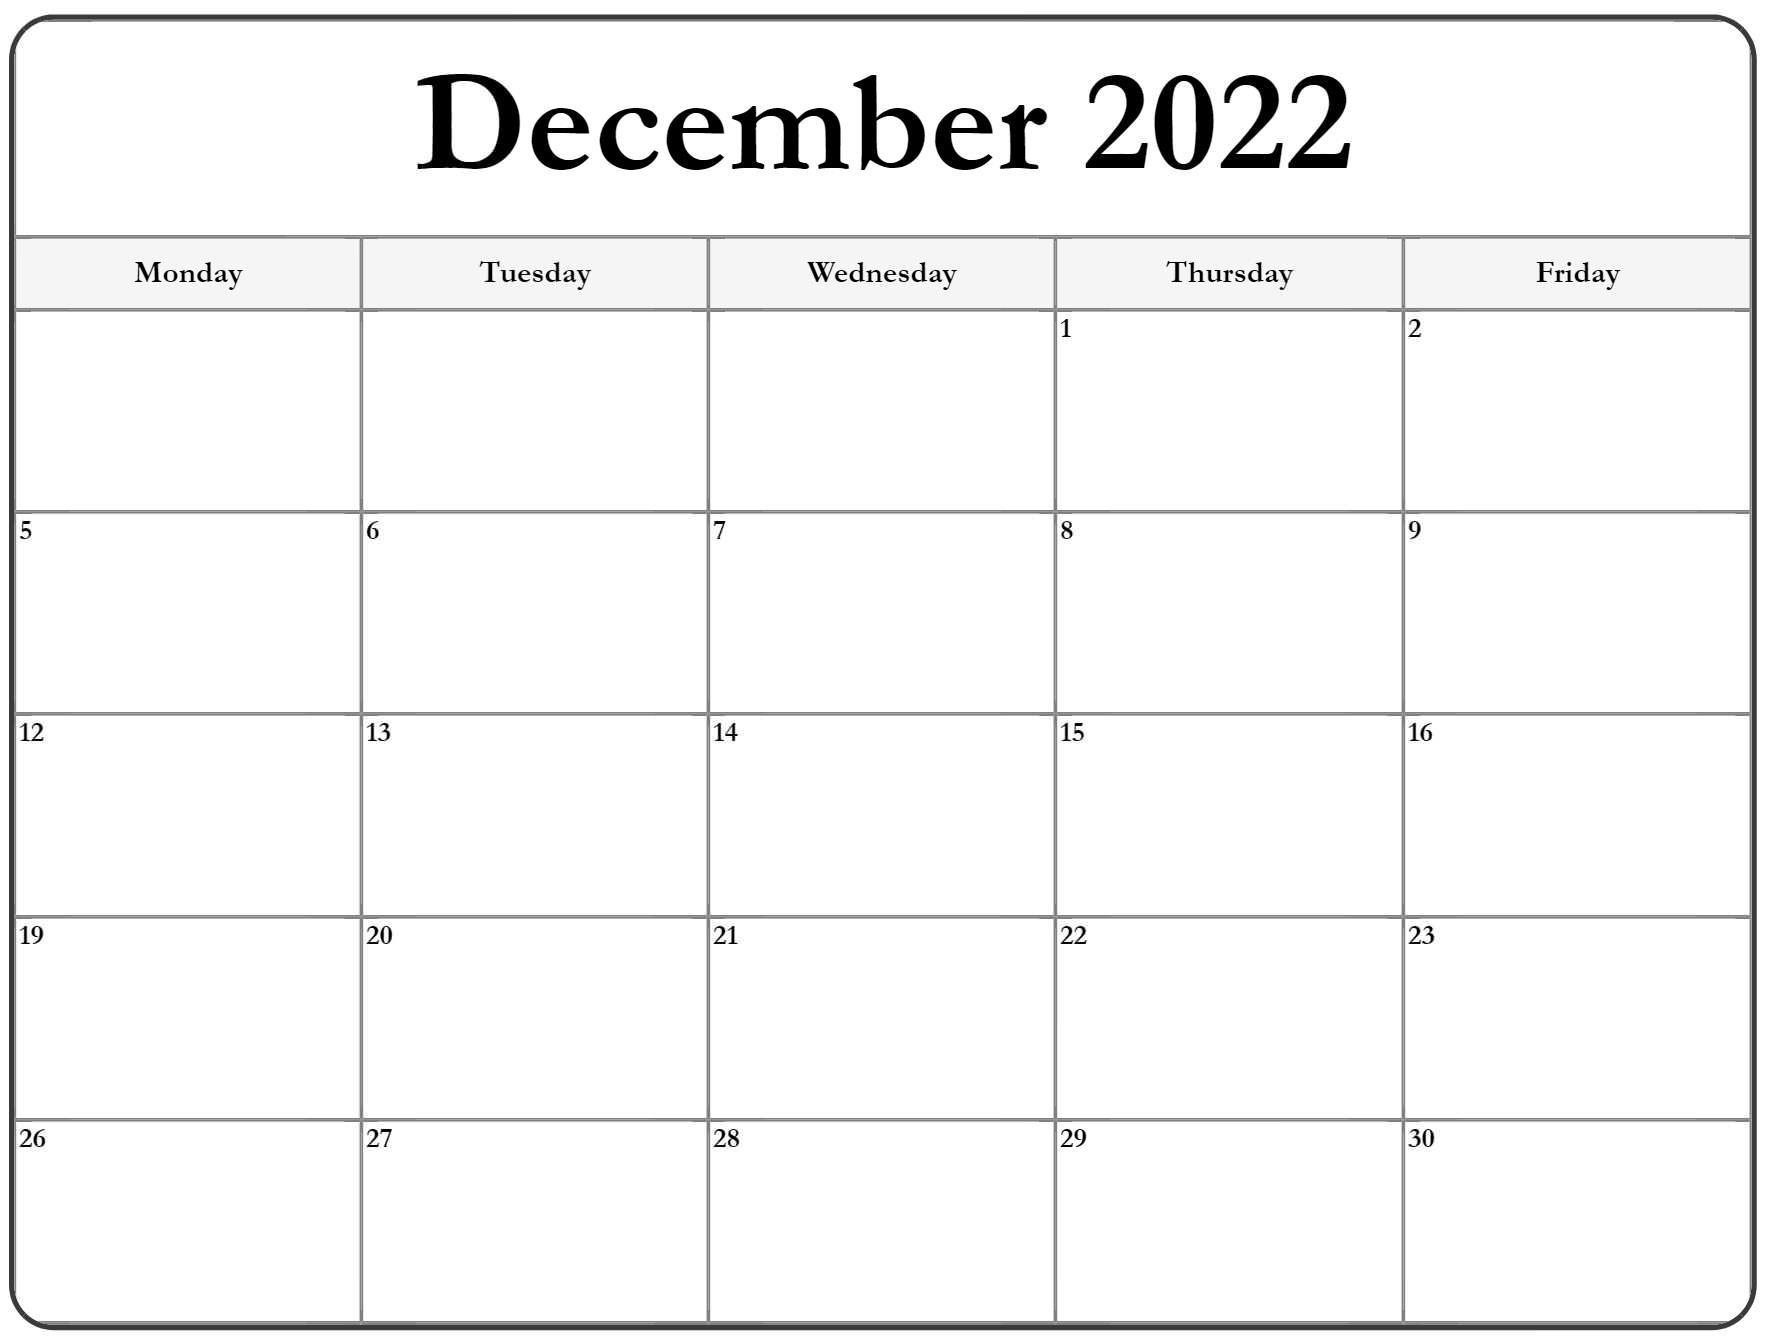 Get Calendar Of December 2022